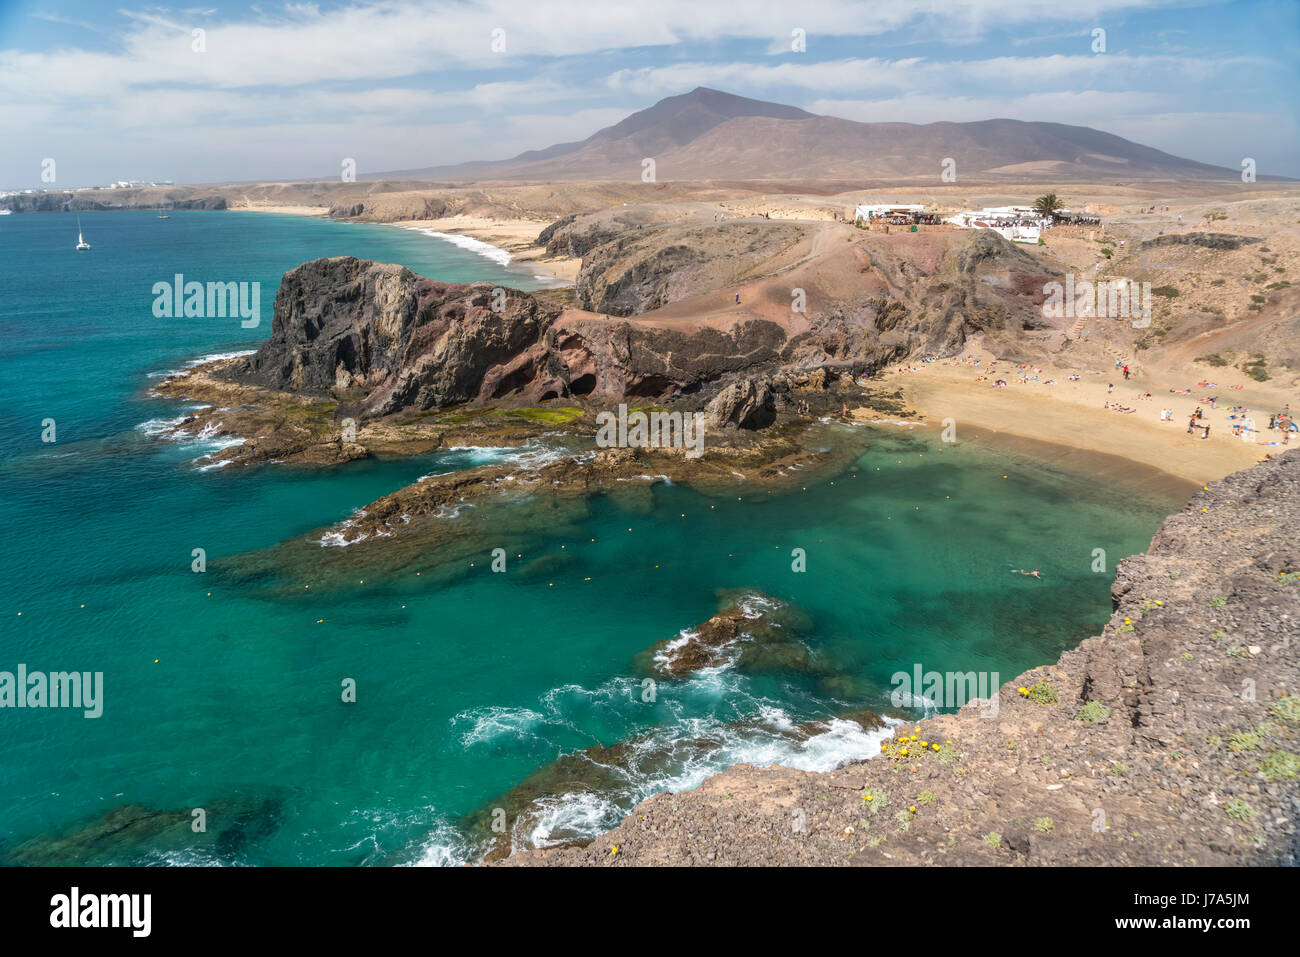 Playas de Papagayo bei Playa Blanca, Insel Lanzarote, Kanarische Inseln, Spanien |  Playas de Papagayo near  Playa Blanca, Lanzarote, Canary Islands,  Stock Photo